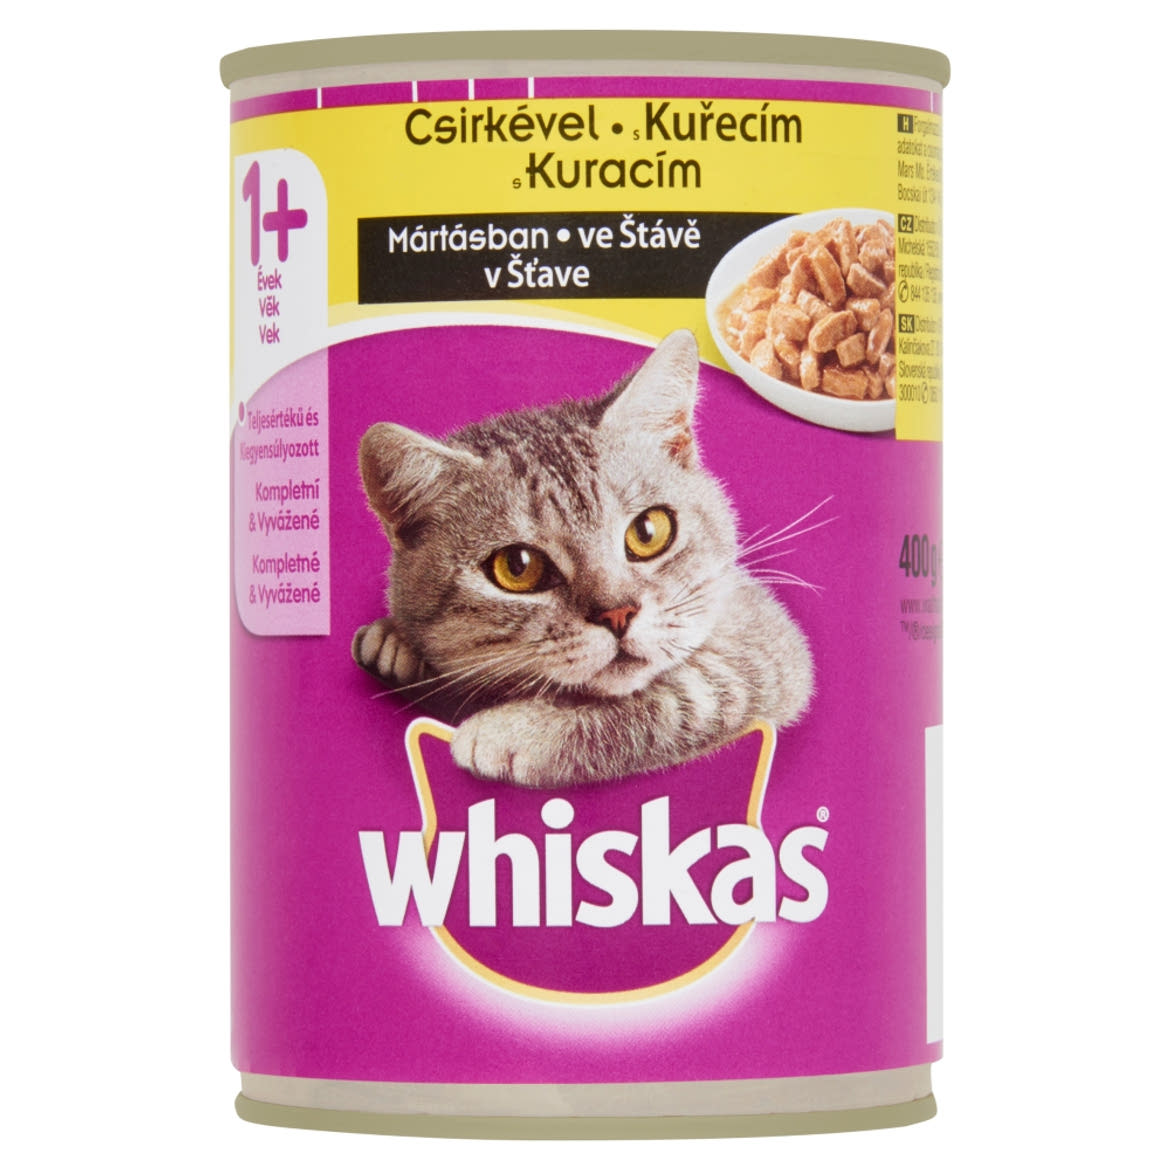 Whiskas konzerv állateledel macskák számára csirkével mártásban